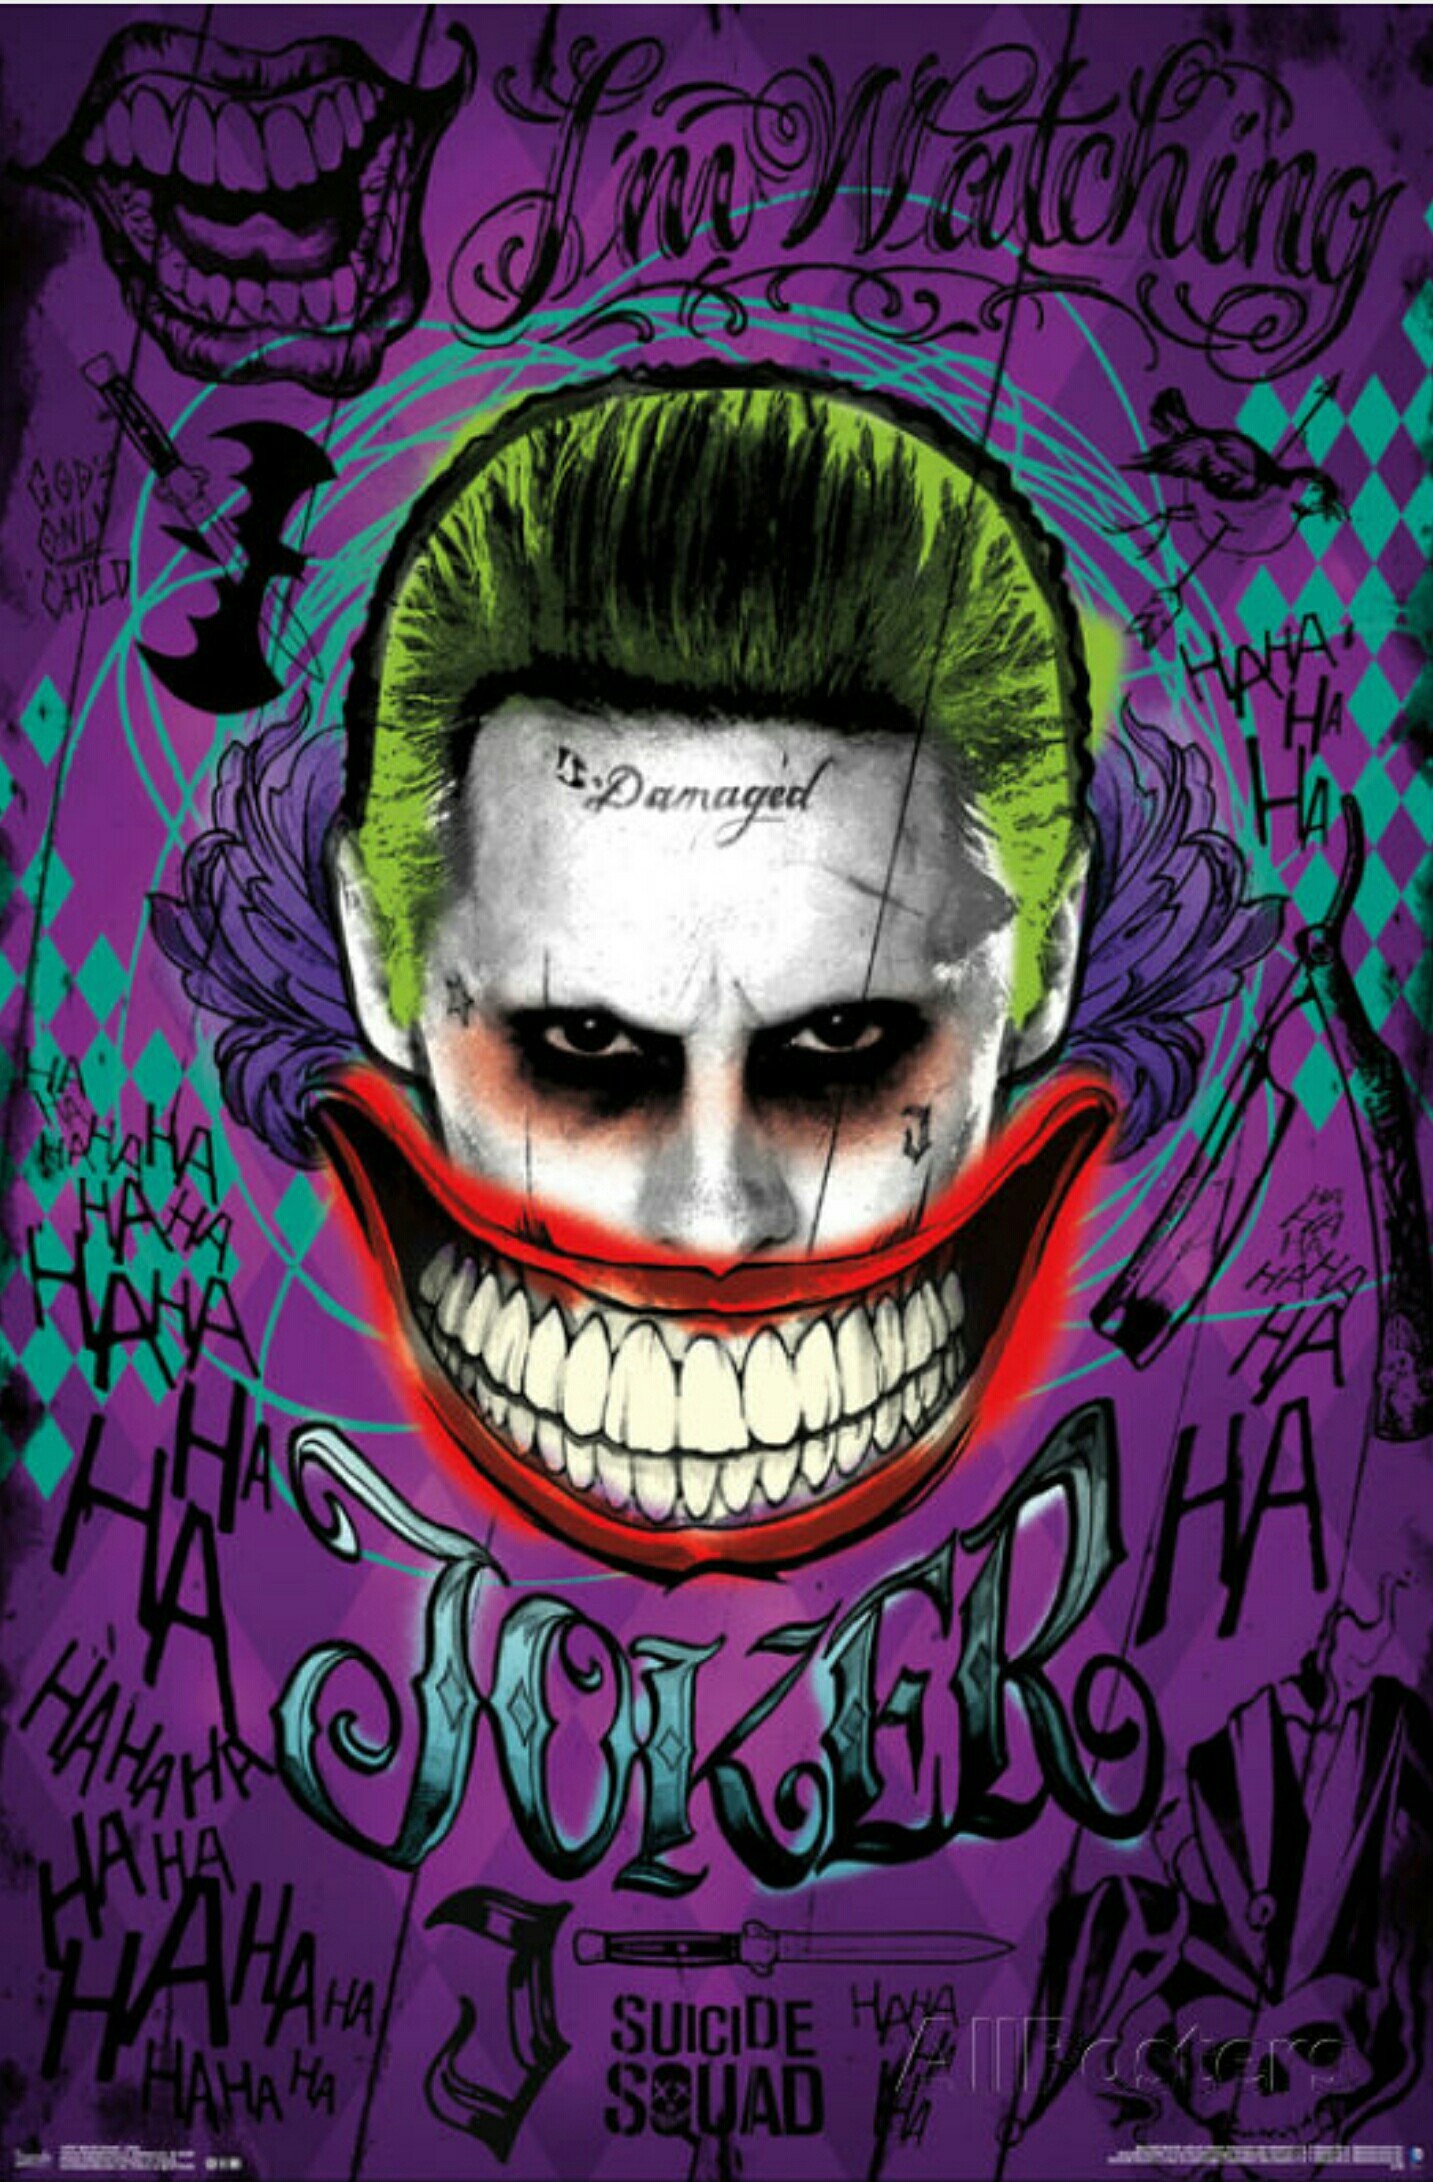 Harley Quinn And Joker Wallpaper ① Download Free Beautiful Full Hd